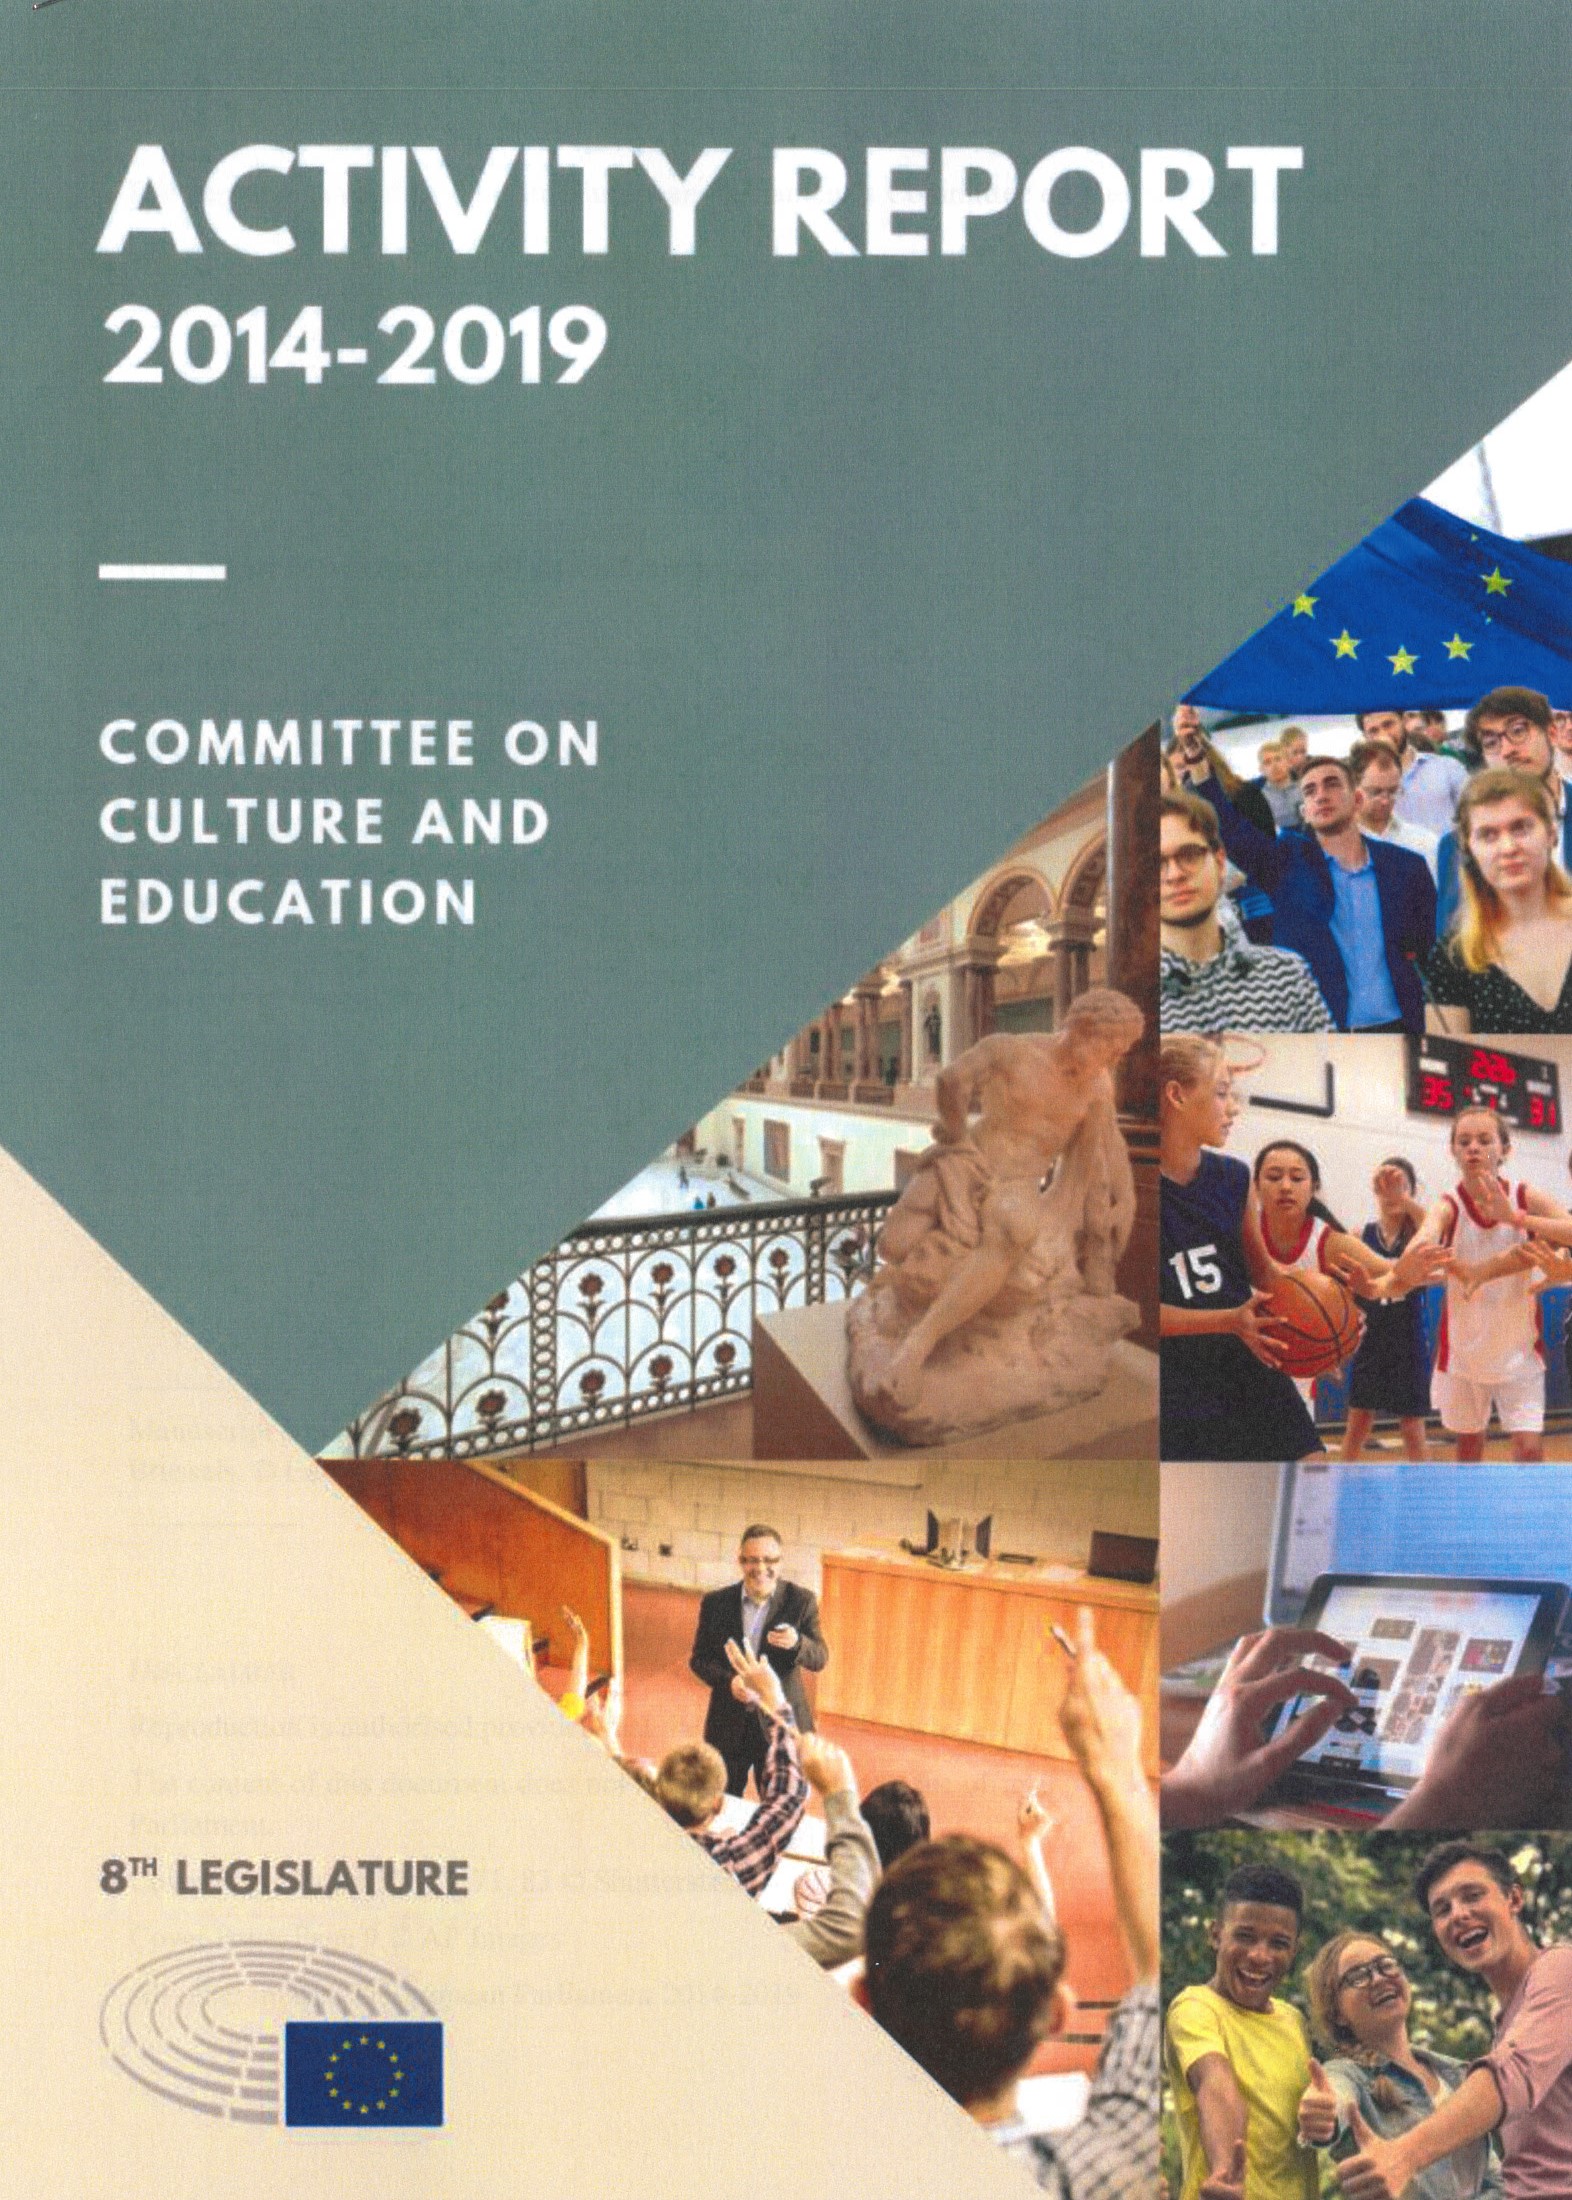 várias fotos com jovens em atividades desportivas, culturais, intercâmbio e o título Activity report 2014-2019: Committee on Culture and Education